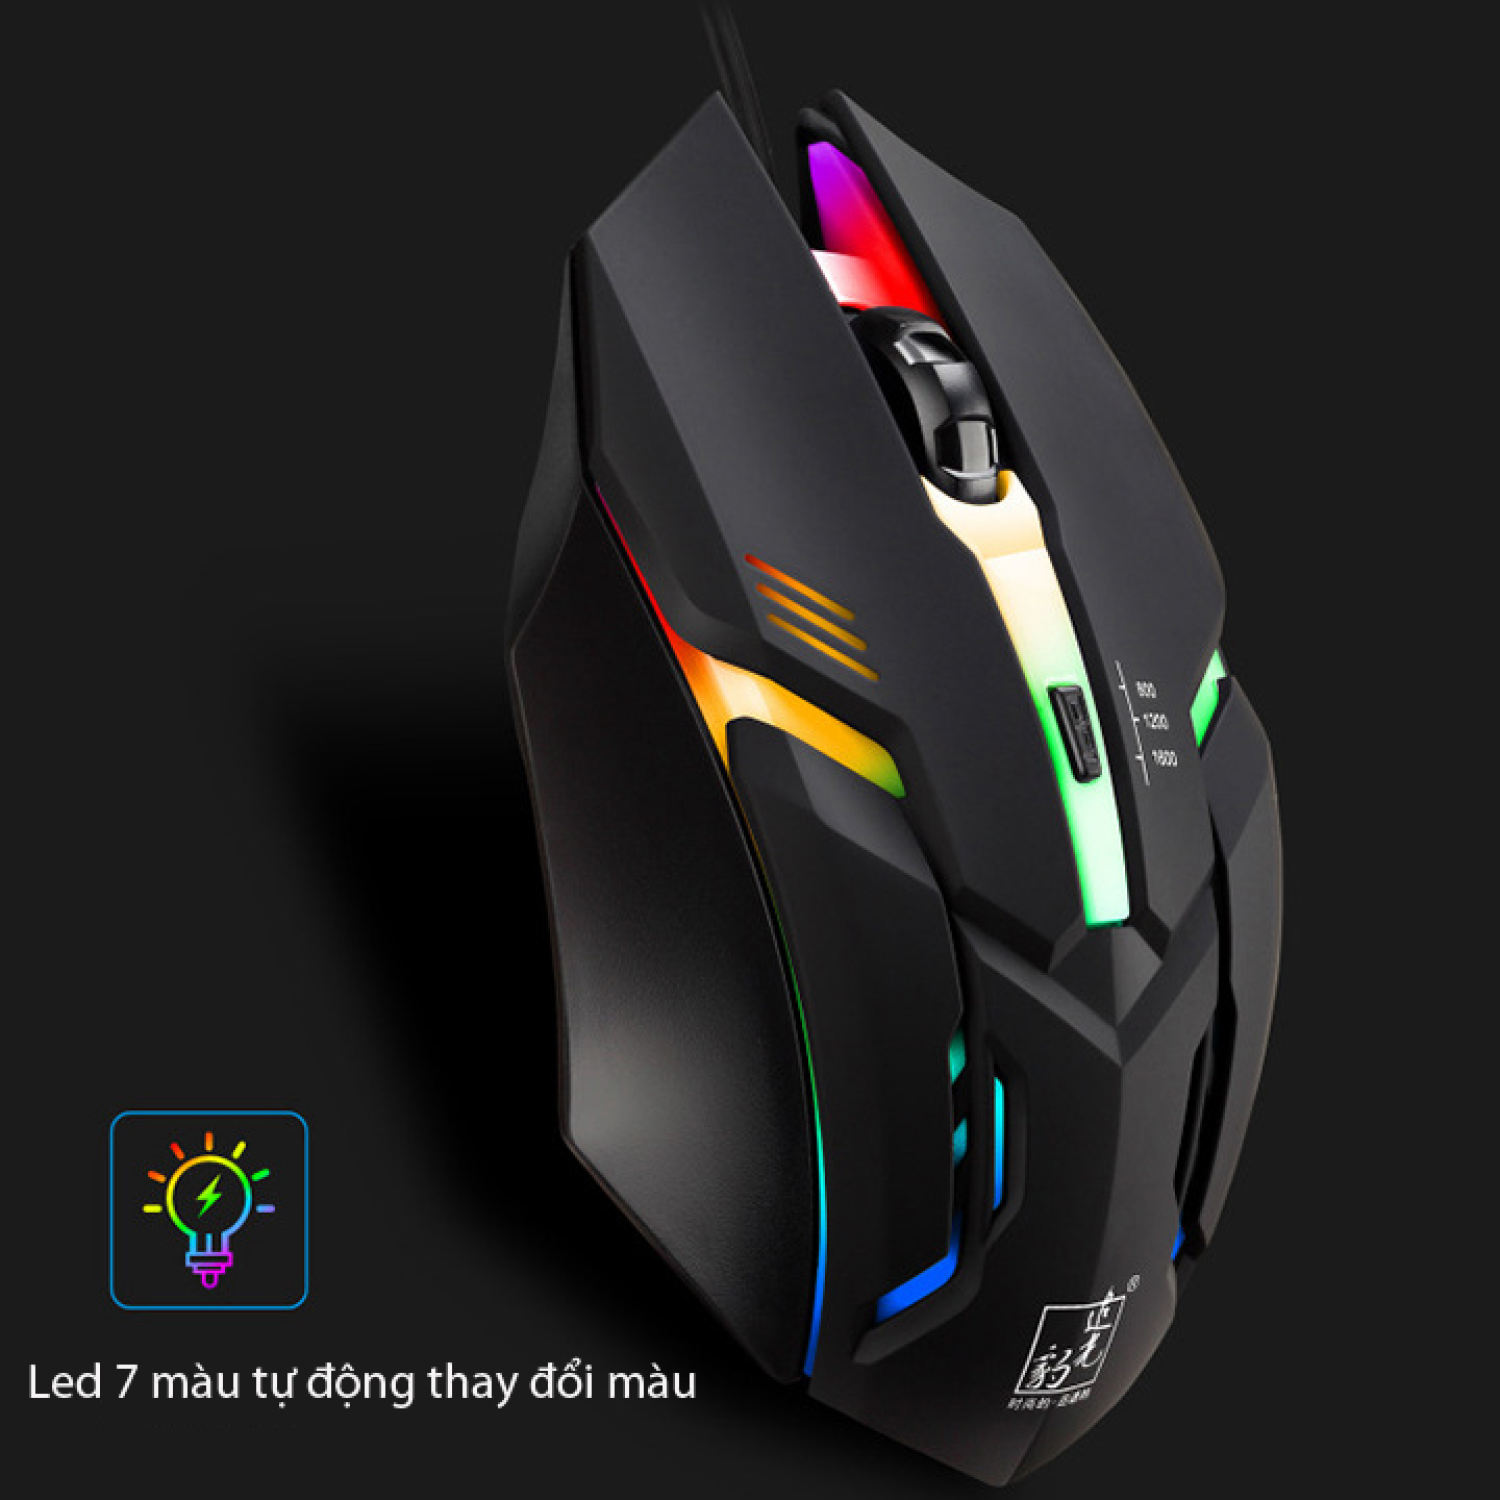 Chuột máy tính chơi game G21 có dây bản cải tiến,hiệu ứng ánh sáng đèn led 7 màu, phù hợp cho game thủ và văn phòng